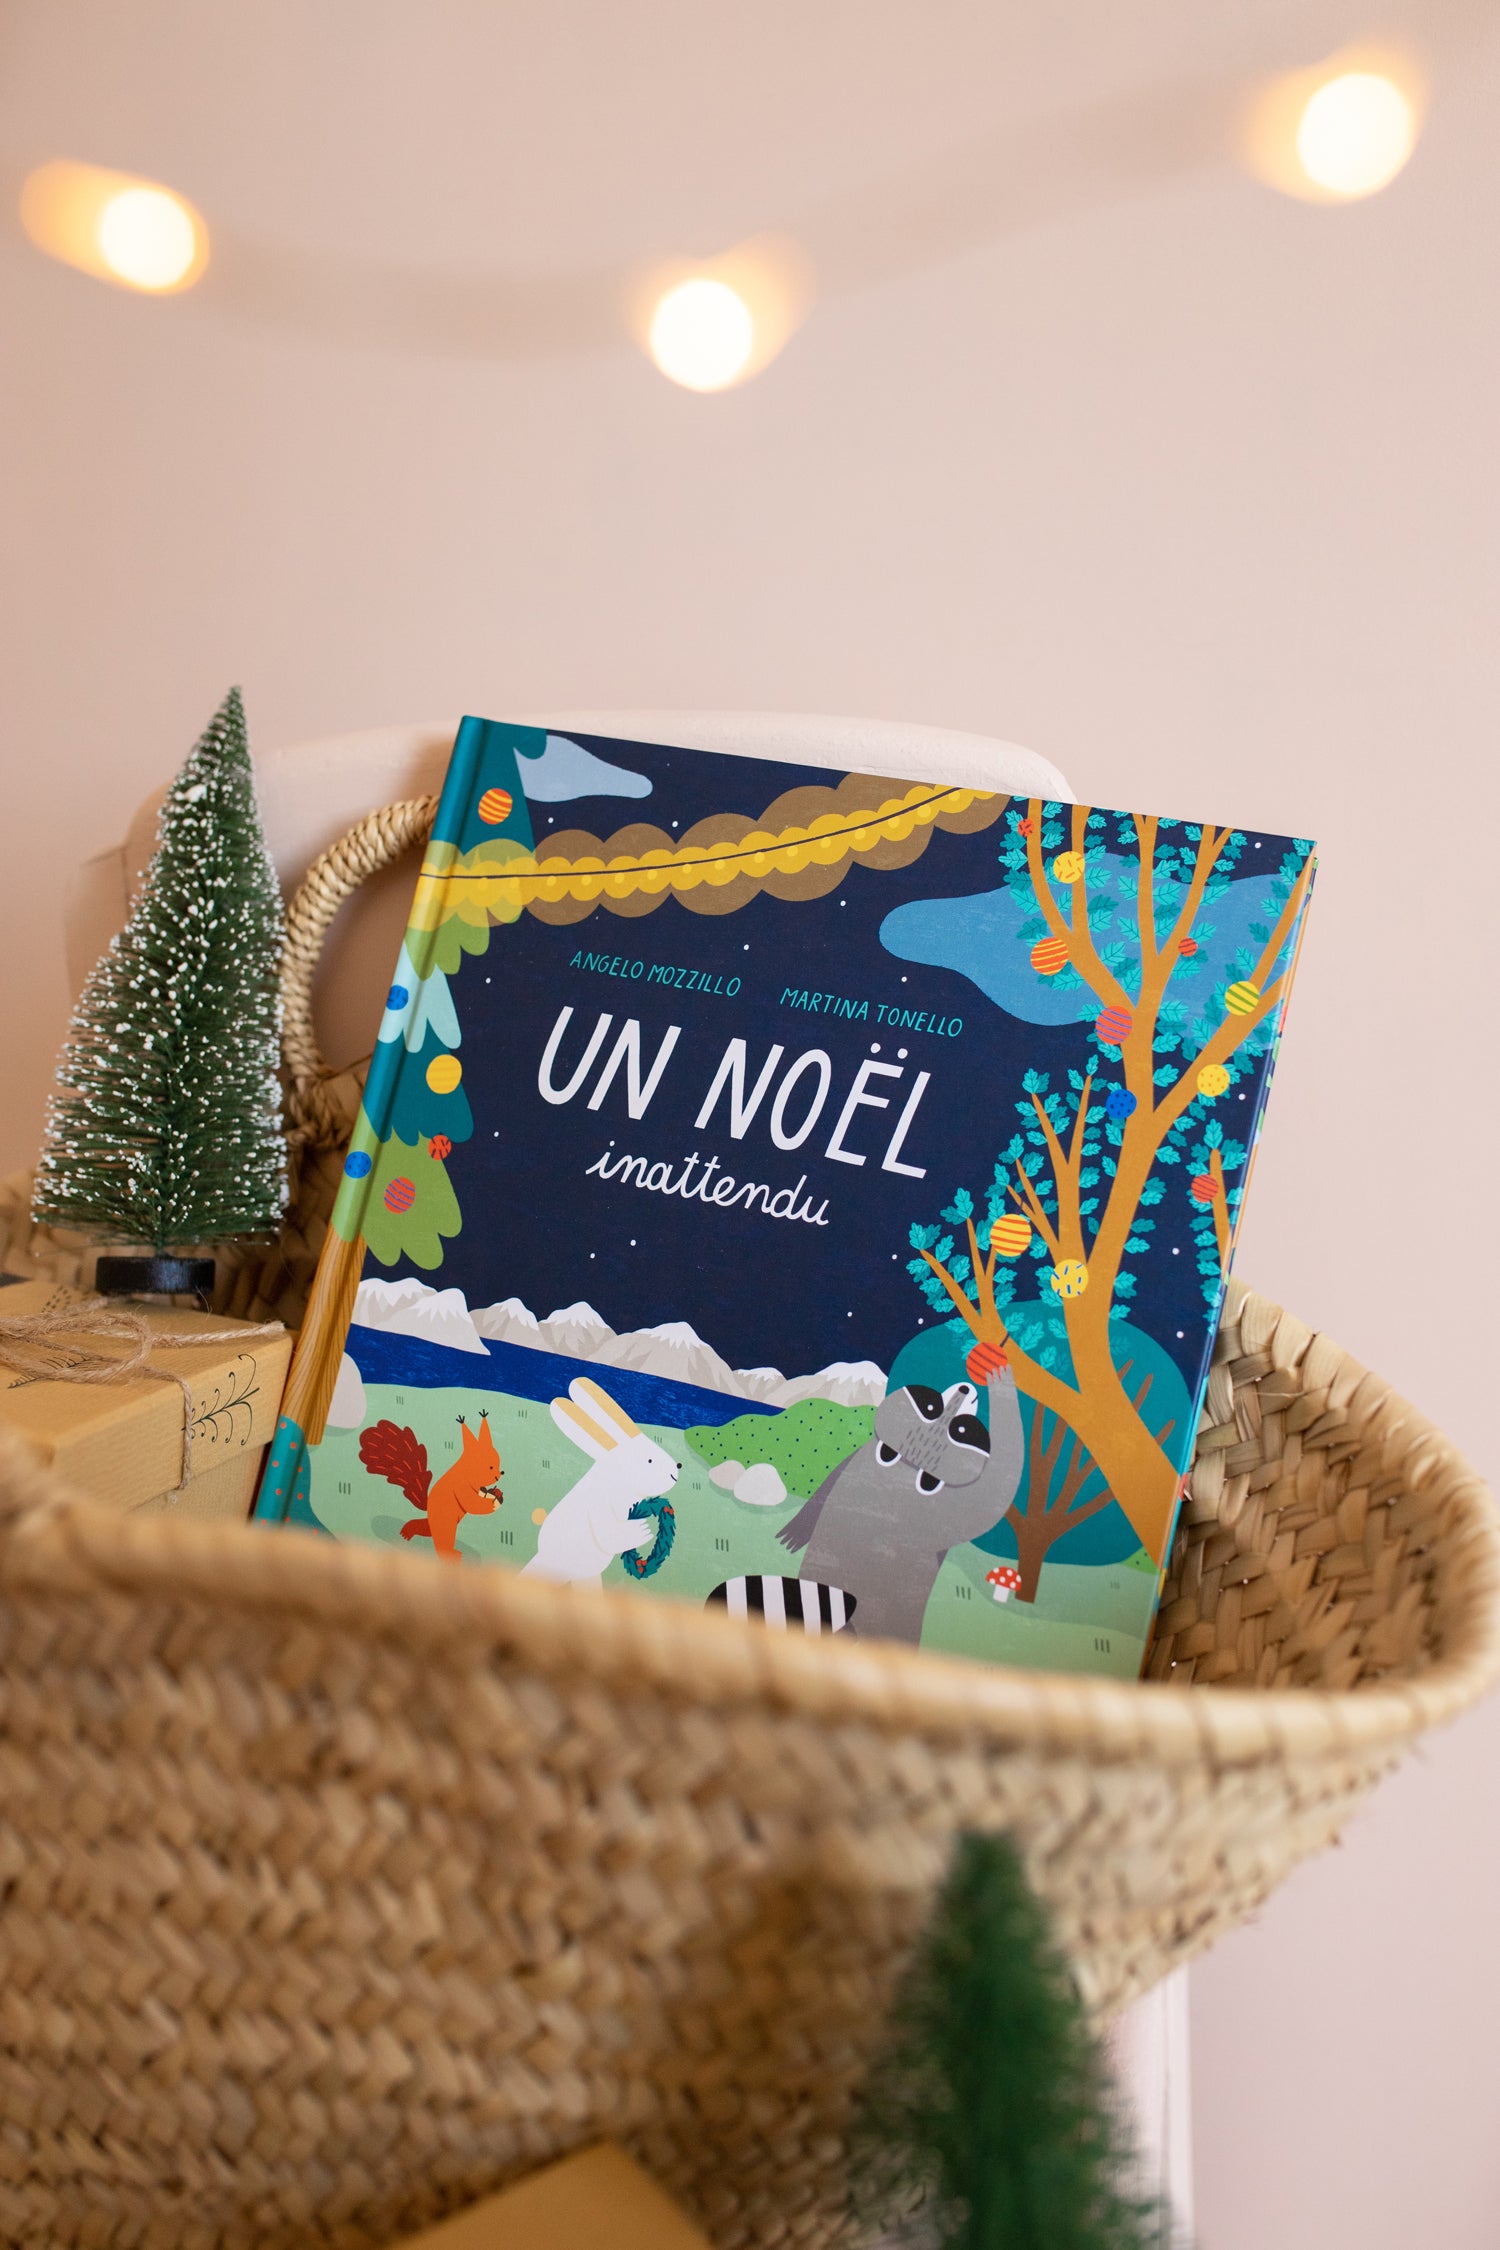 Album de noel pour enfant de 3 ans et plus. Un Noel inattendu. Palomita. Imprimé en France.